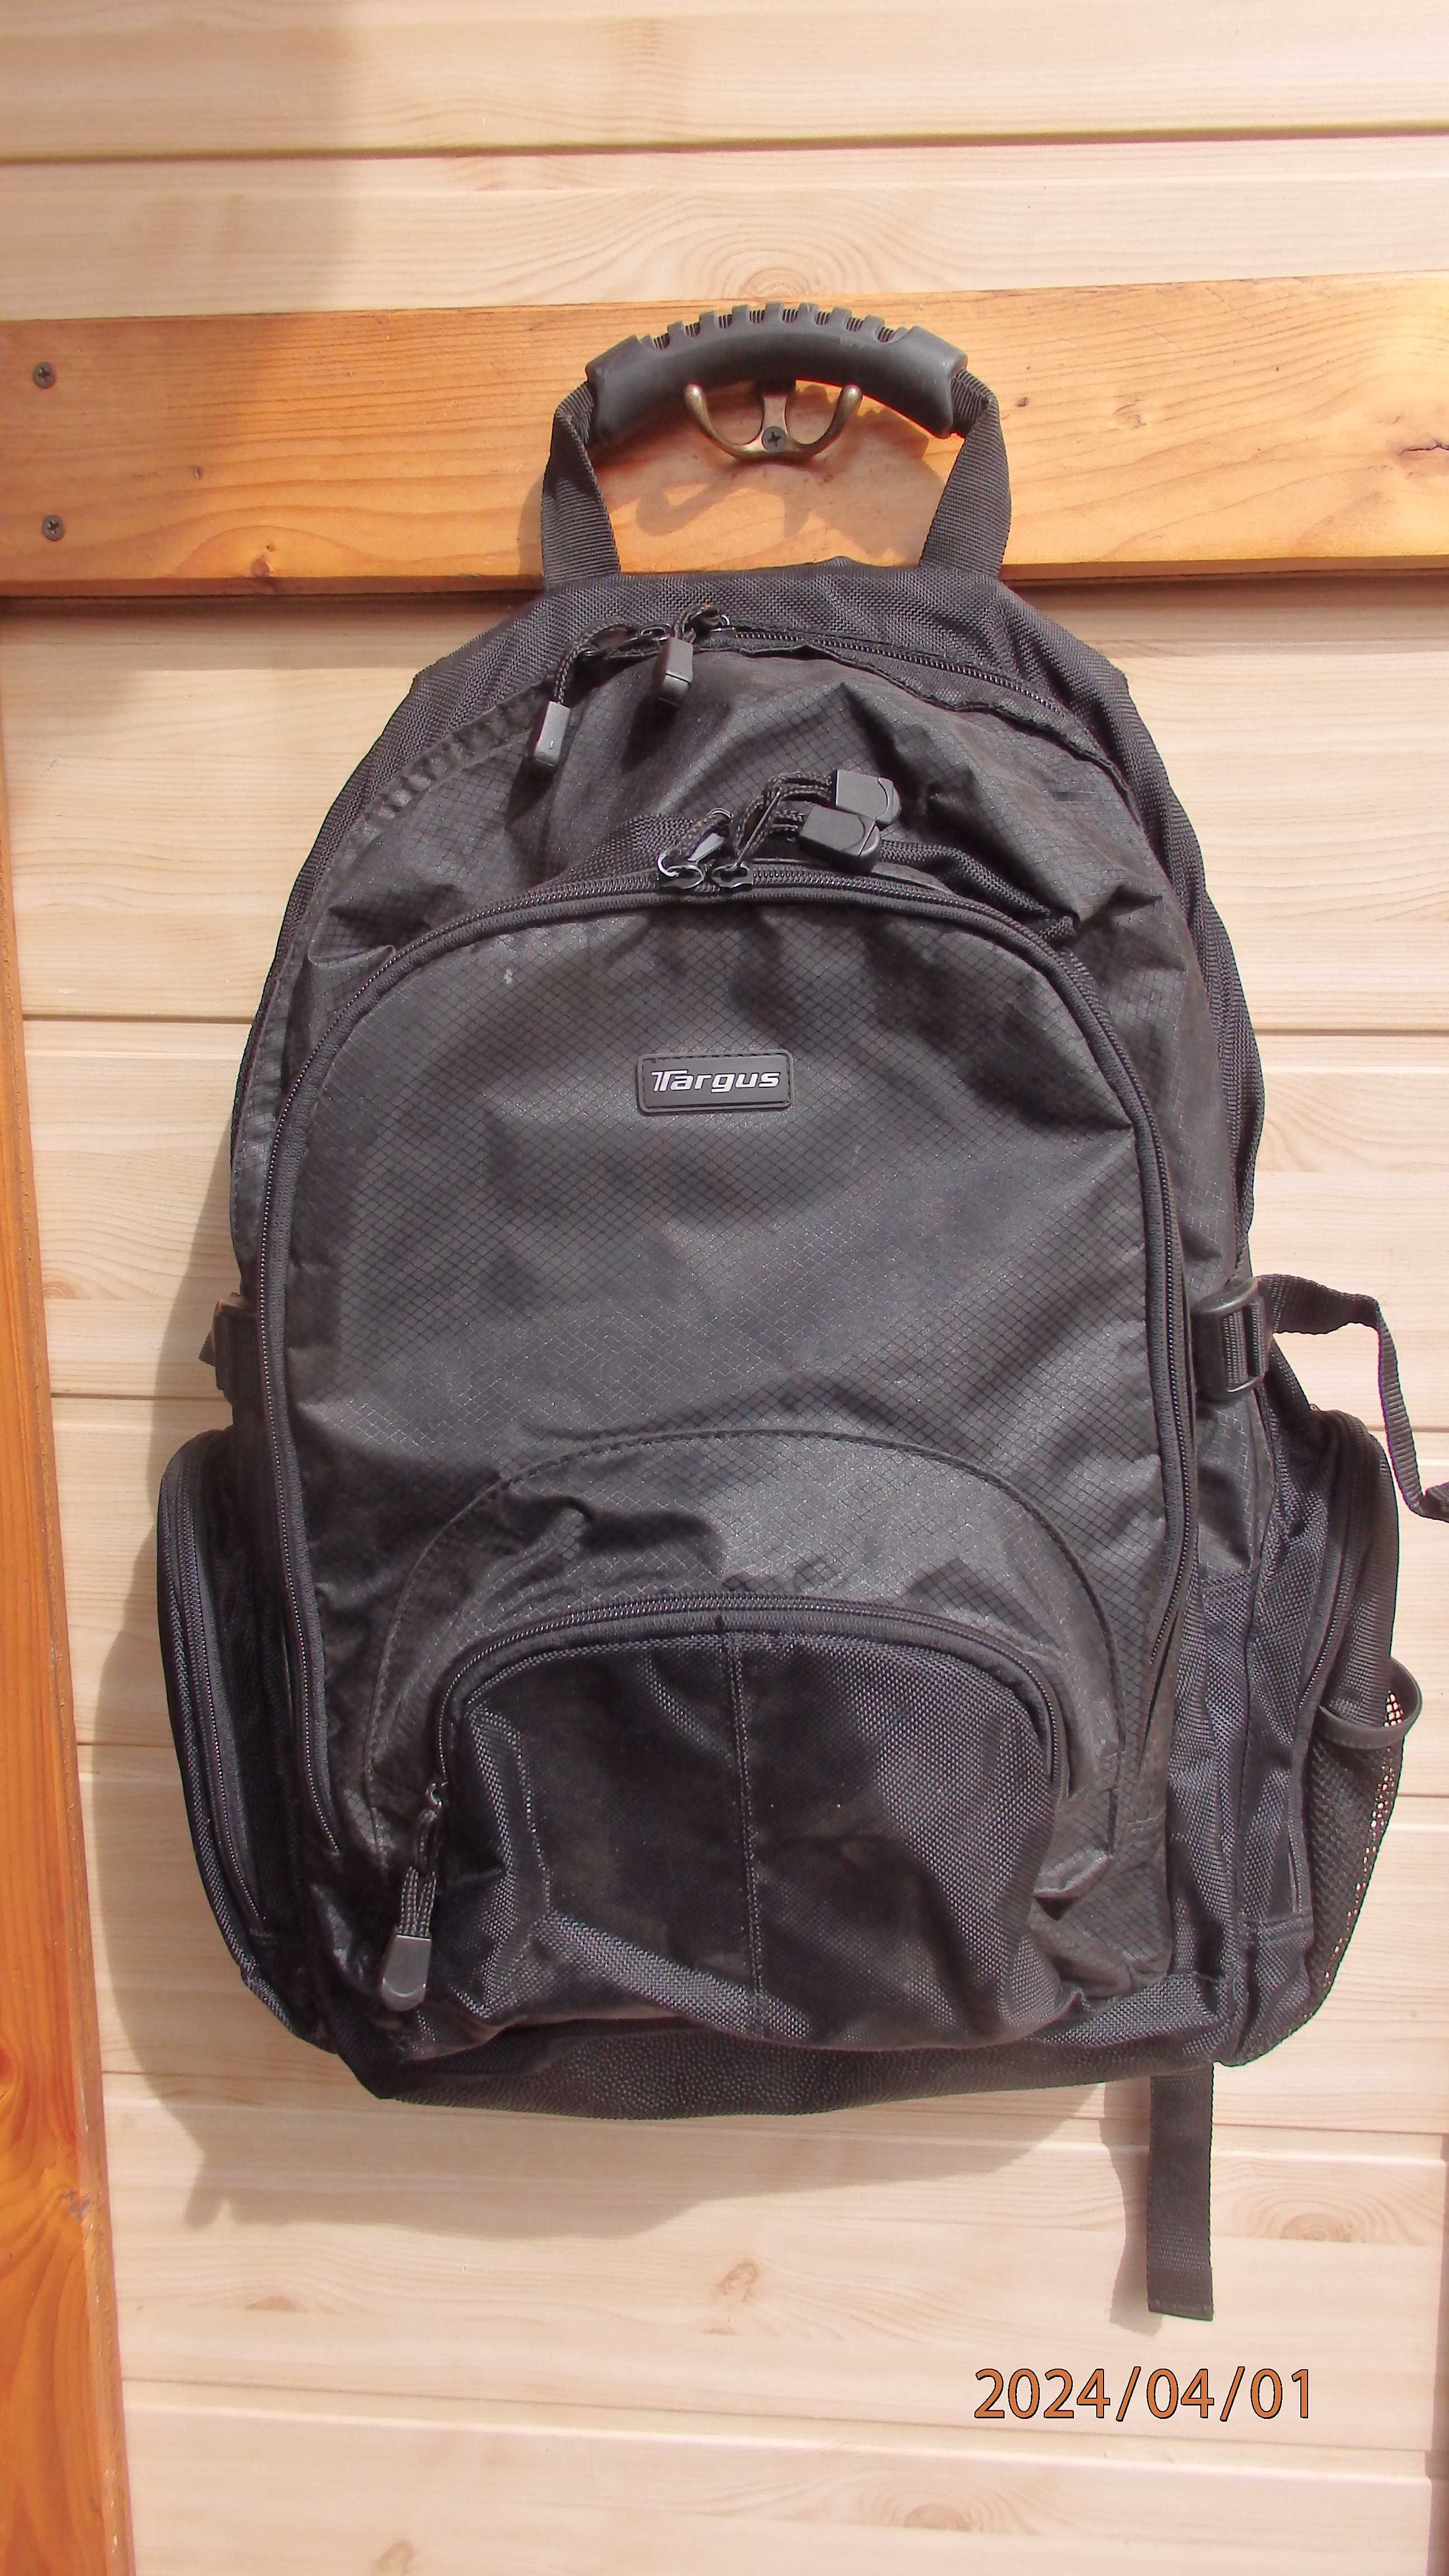 Plecak uniwersalny firmy Targus - podróży i laptop.